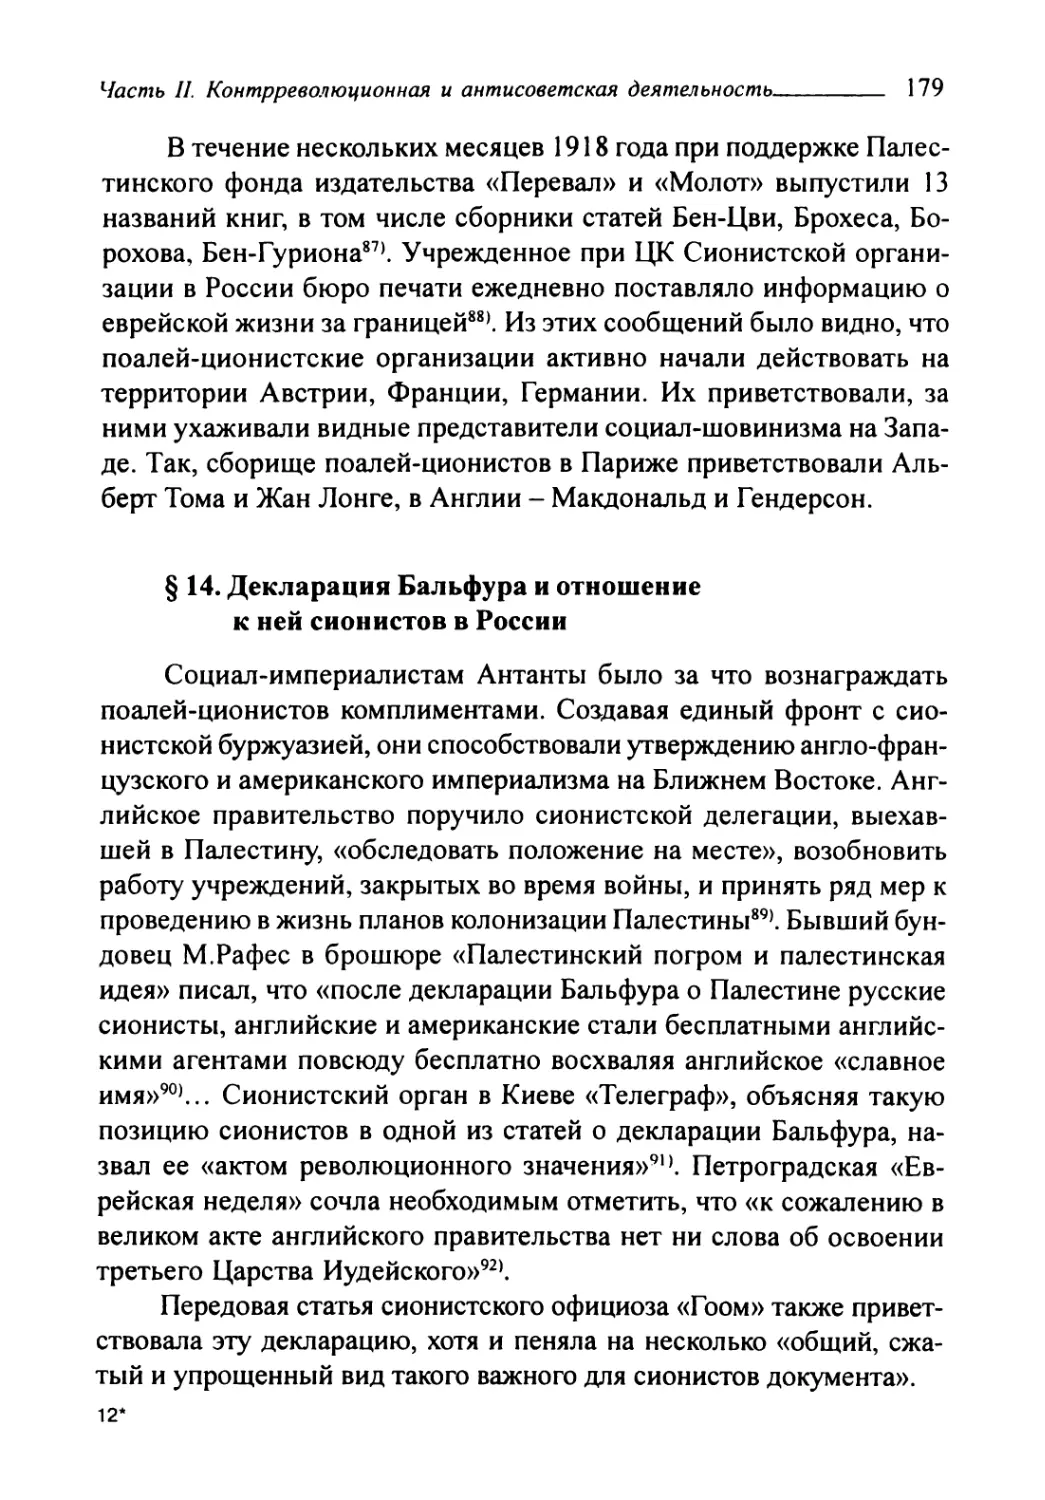 § 14. Декларация Бальфура и отношение к ней сионистов в России